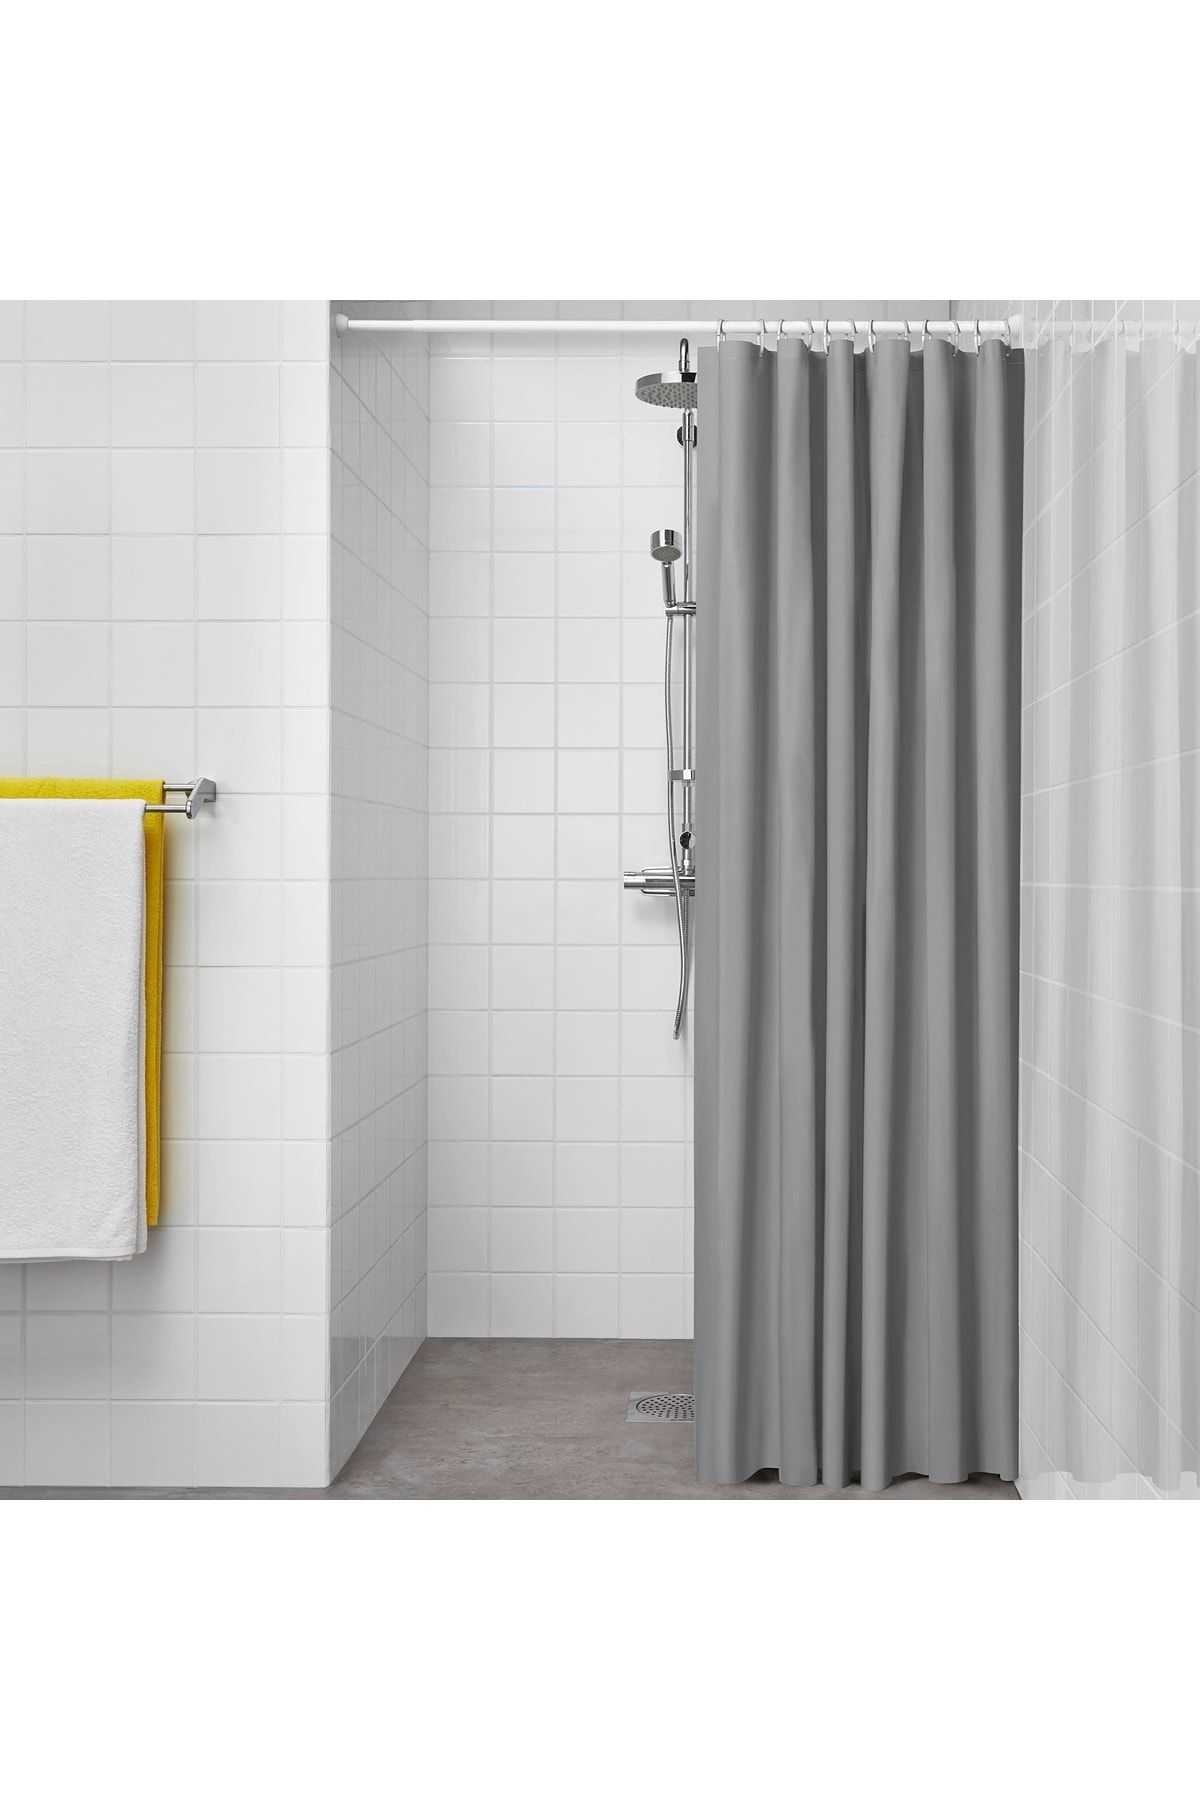 IKEA Duş Perdesi Uzunluk: 200 Cm Genişlik: 180 Cm Malzeme %100 Peva